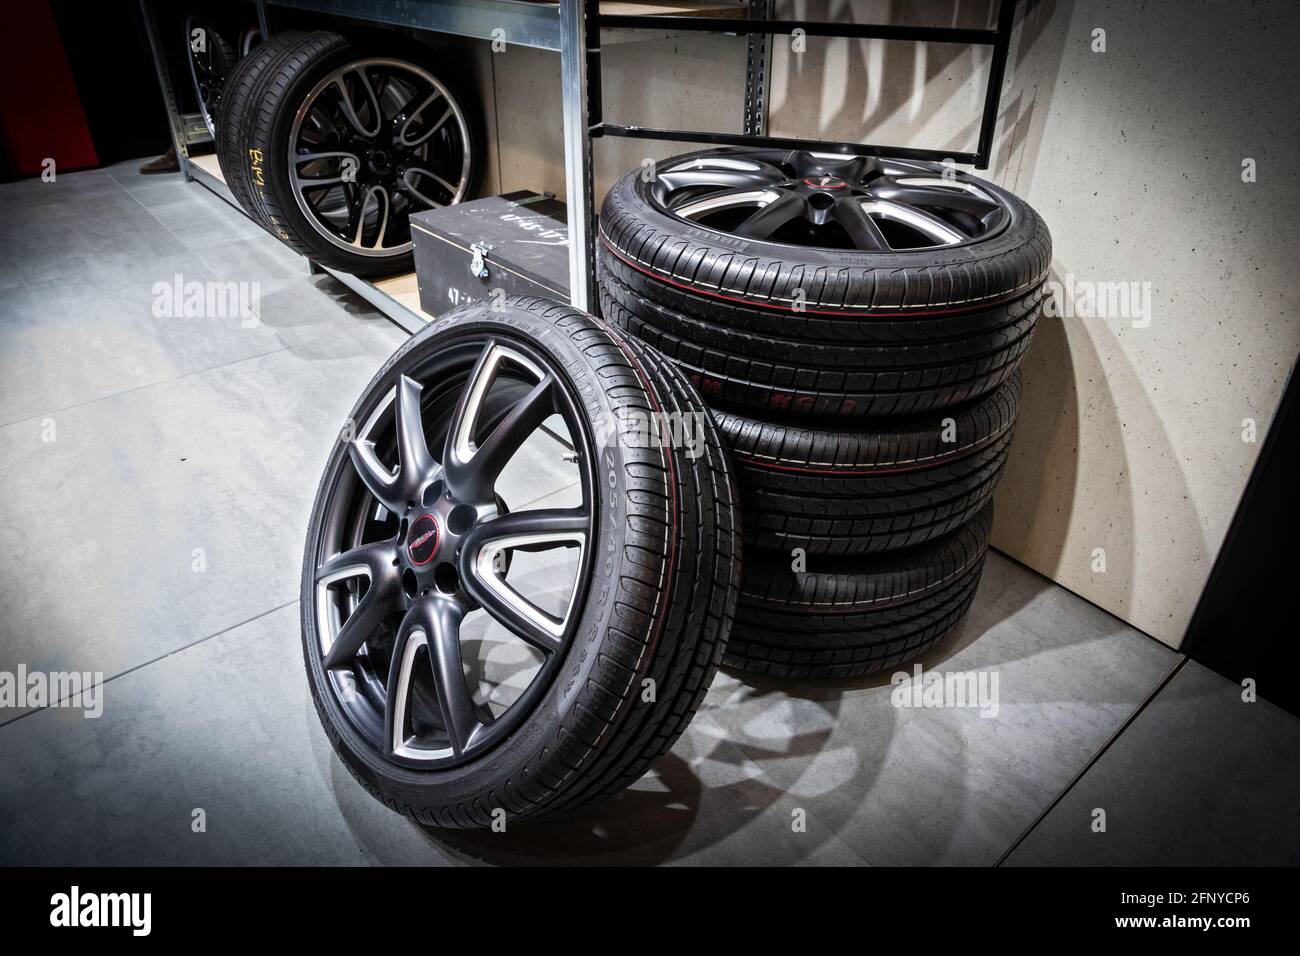 Nouveaux pneus et jantes de voiture sport modernes au salon automobile Autosalon de Bruxelles Expo. Belgique - 19 janvier 2017 Banque D'Images